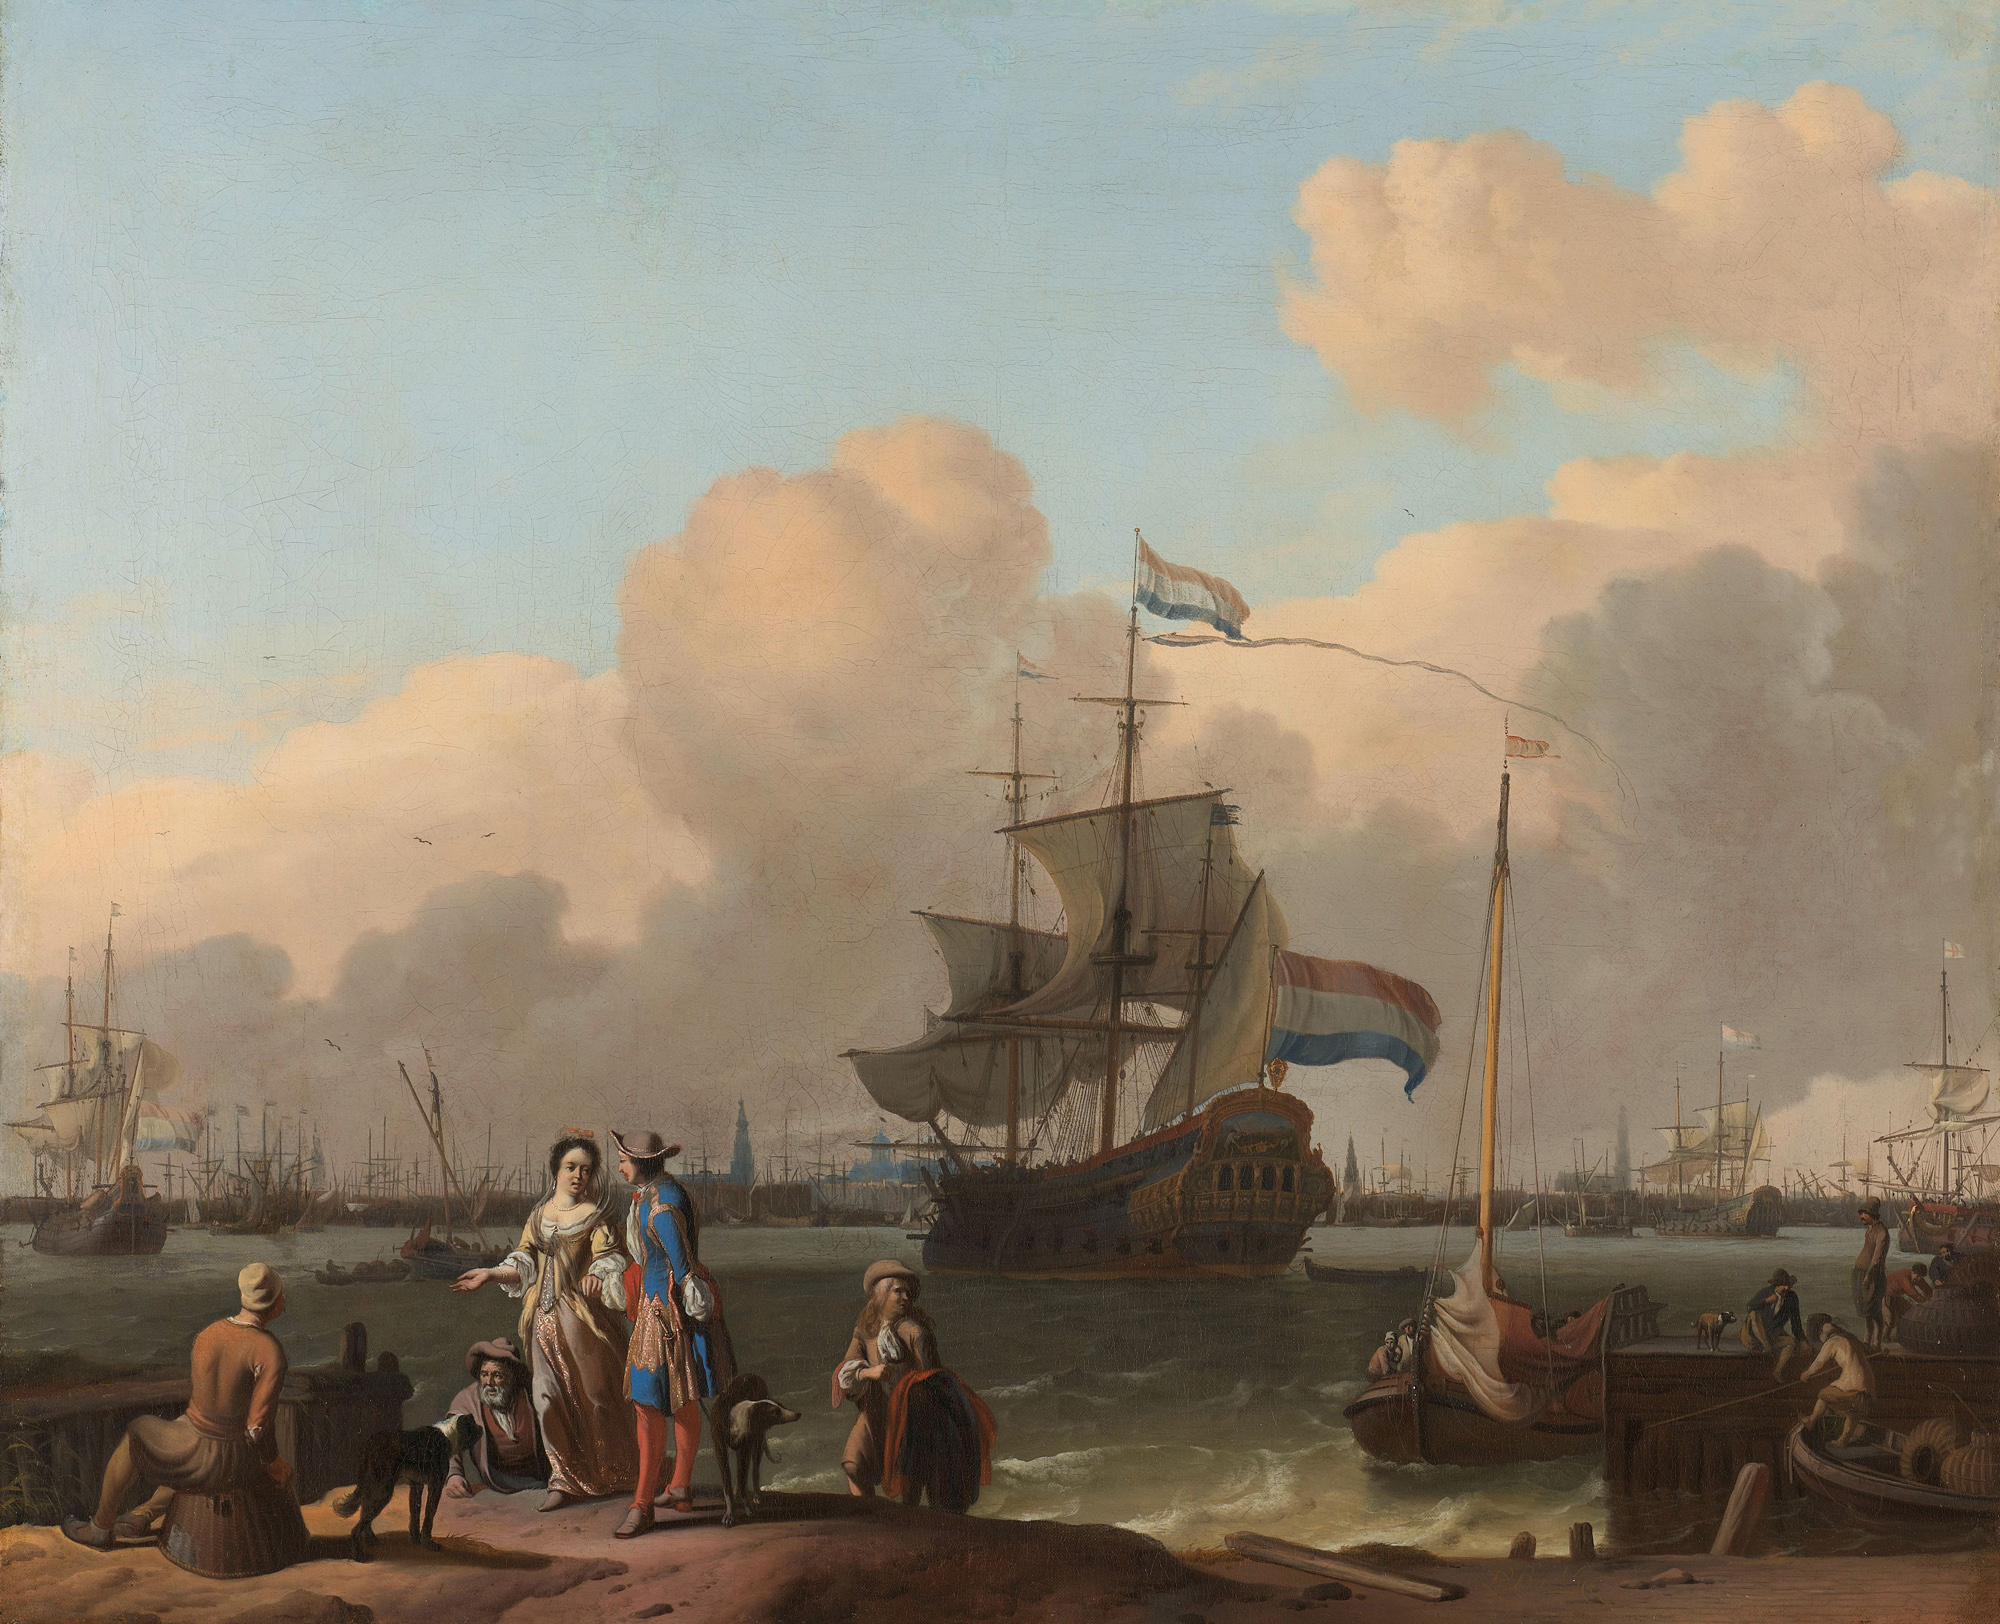 Op dit eind zeventiende-eeuwse schilderij zien we het fregat De Ploeg, op het IJ. De Huis te Warmelo zag er ongeveer hetzelfde uit. Vervaardiger Ludolf Bakhuysen